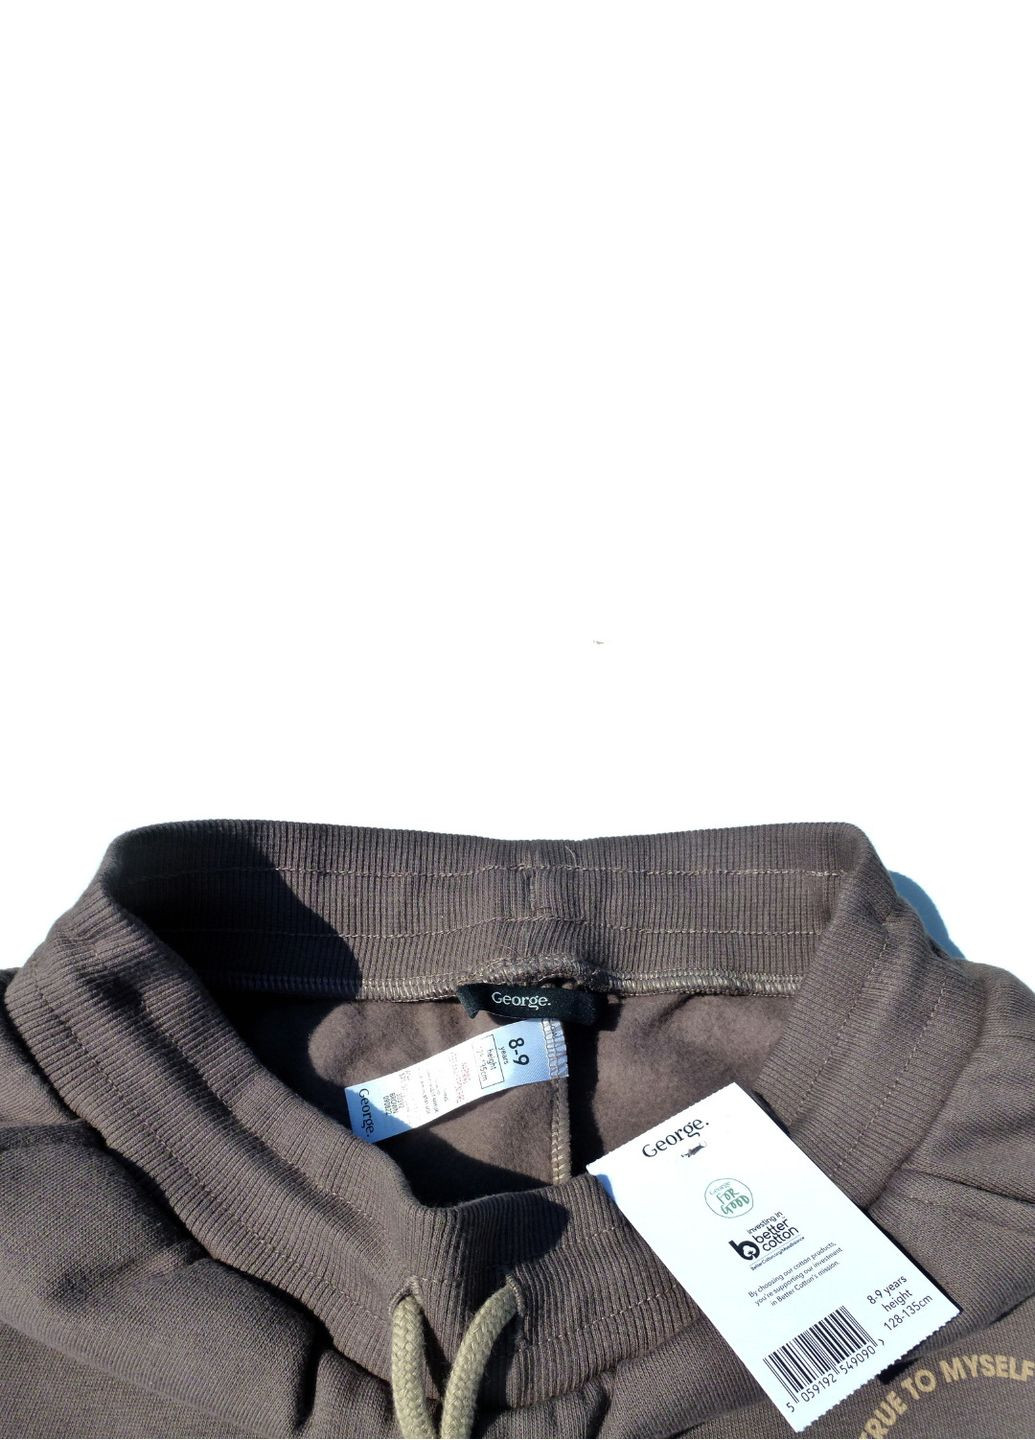 Теплый спортивный костюм (худи+штаны), цвета мокко с контрастным лого, 140-146 см George (279340956)